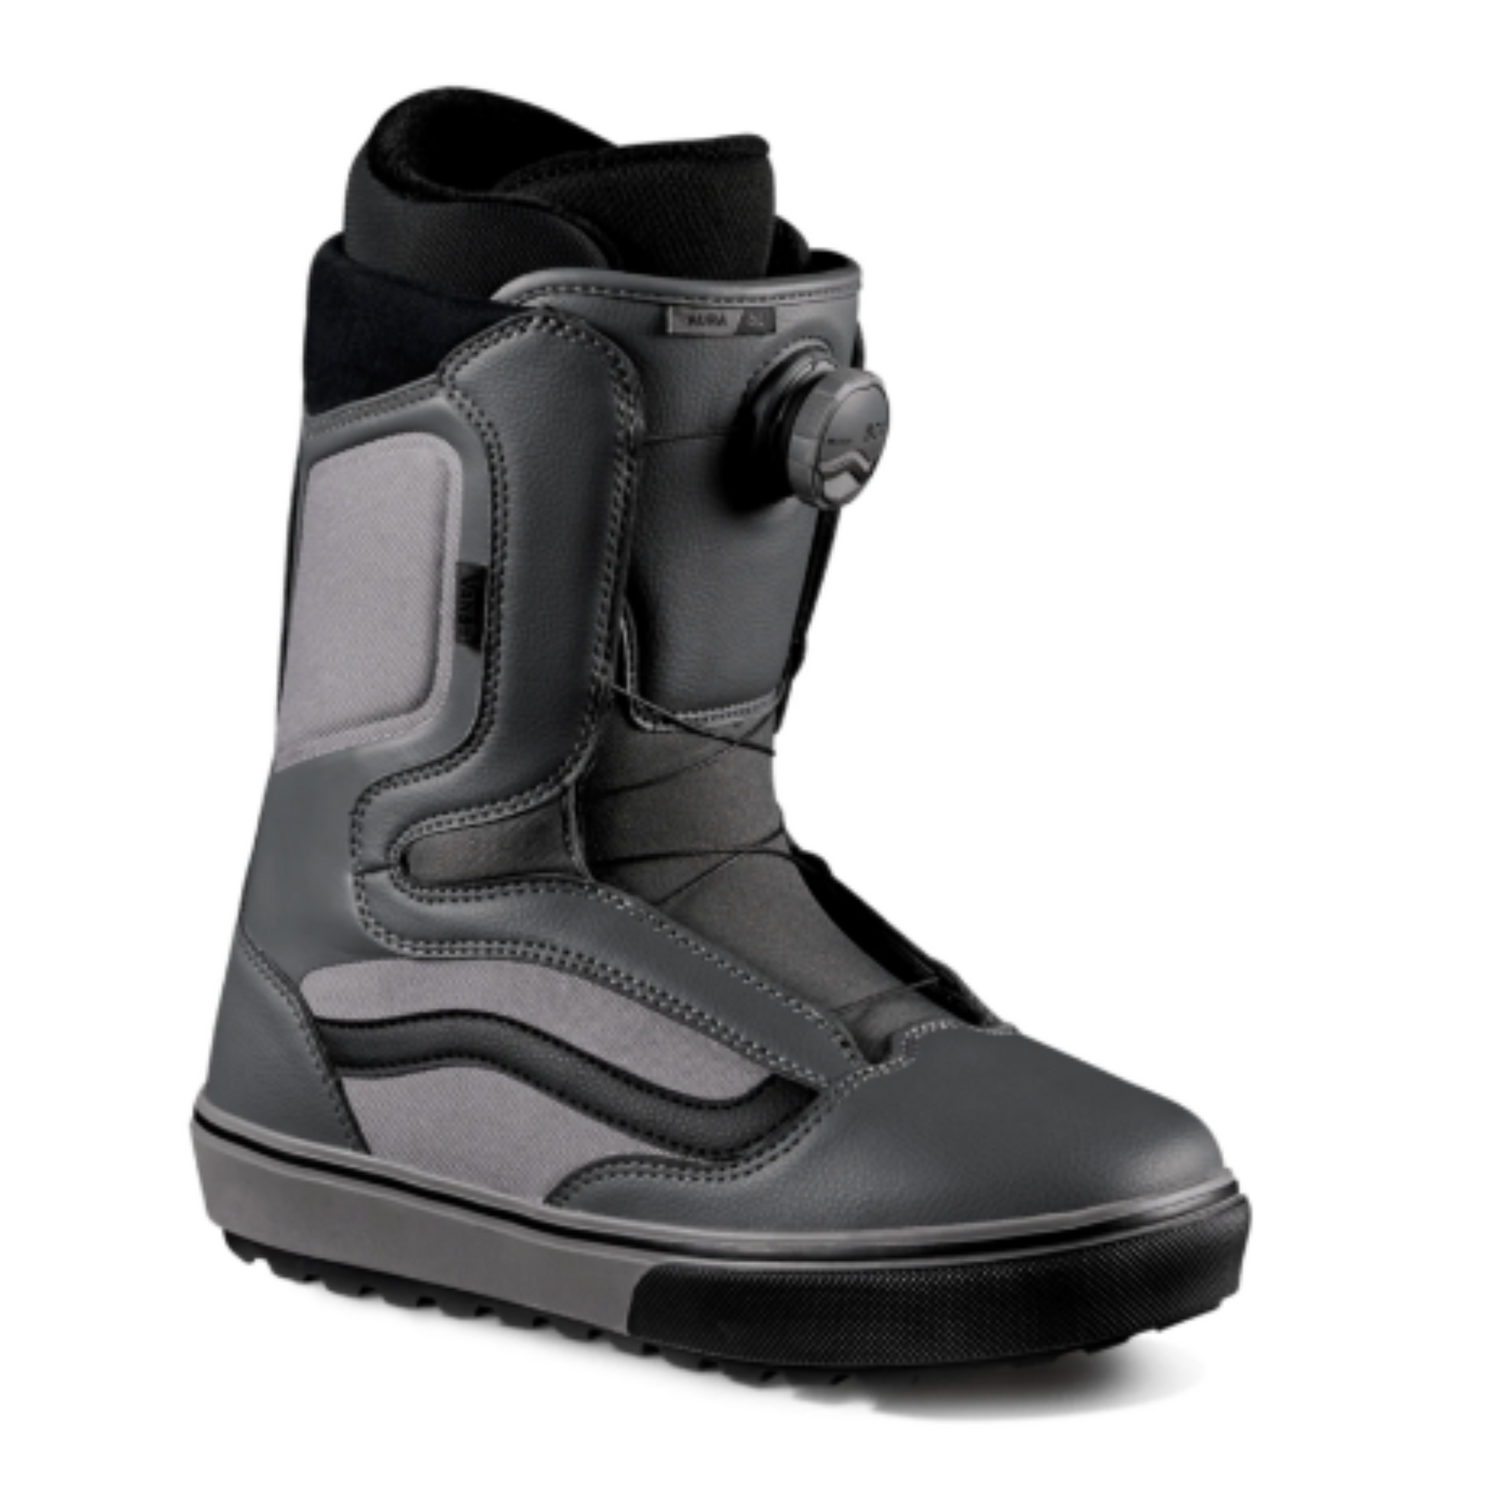 Vans Men's Aura OG Snowboard Boots in Pewter and Black